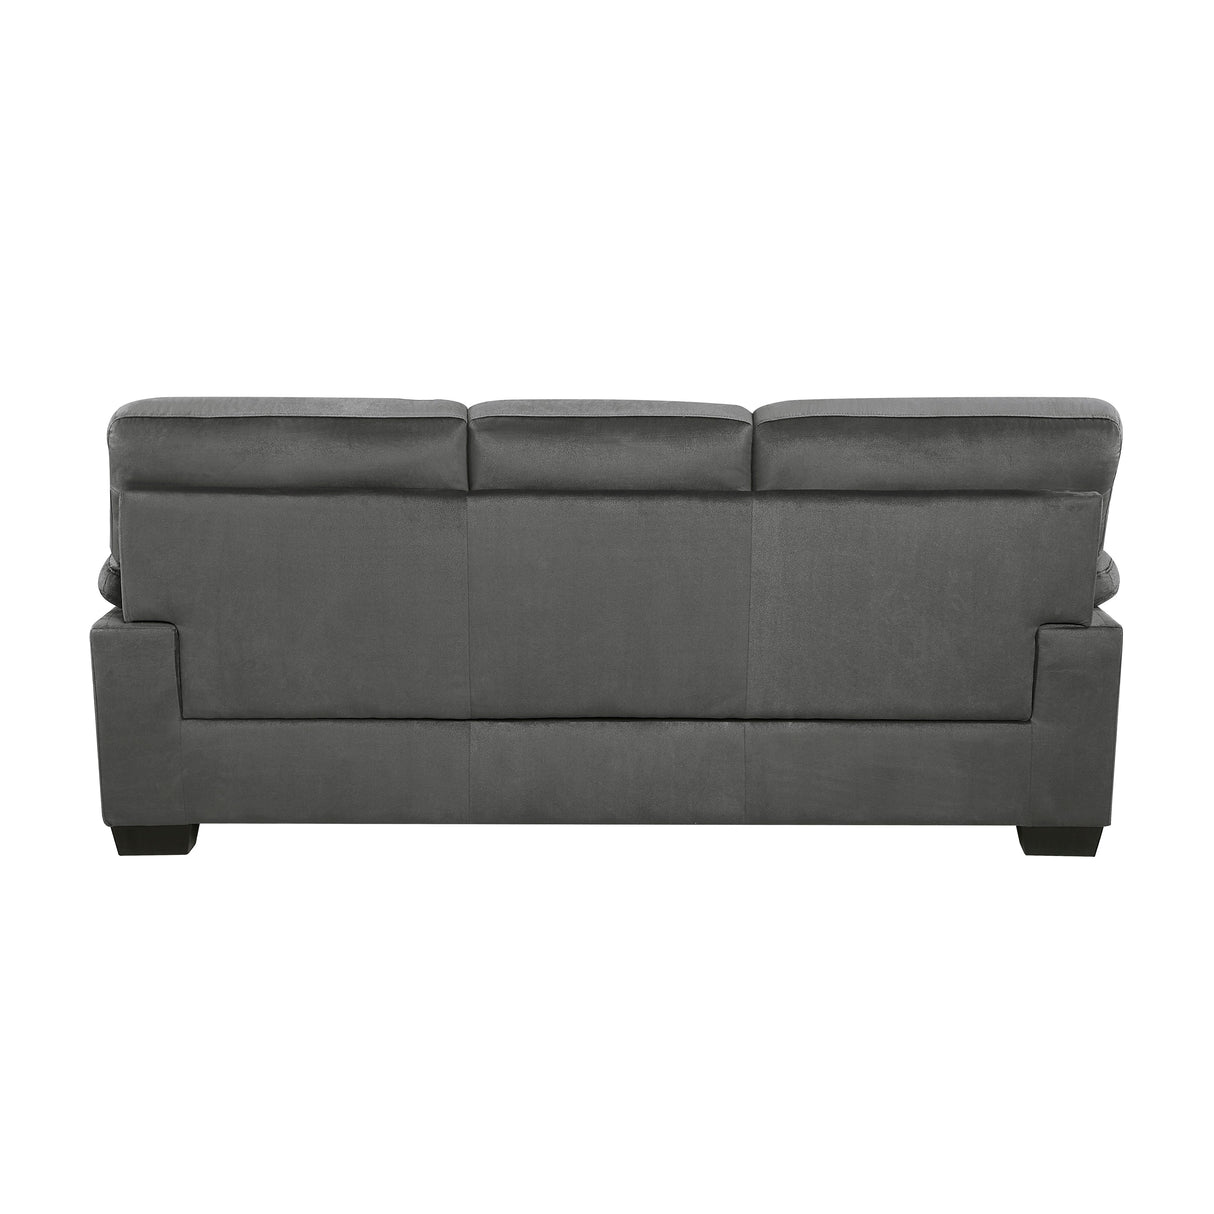 Keighly Dark Gray Sofa